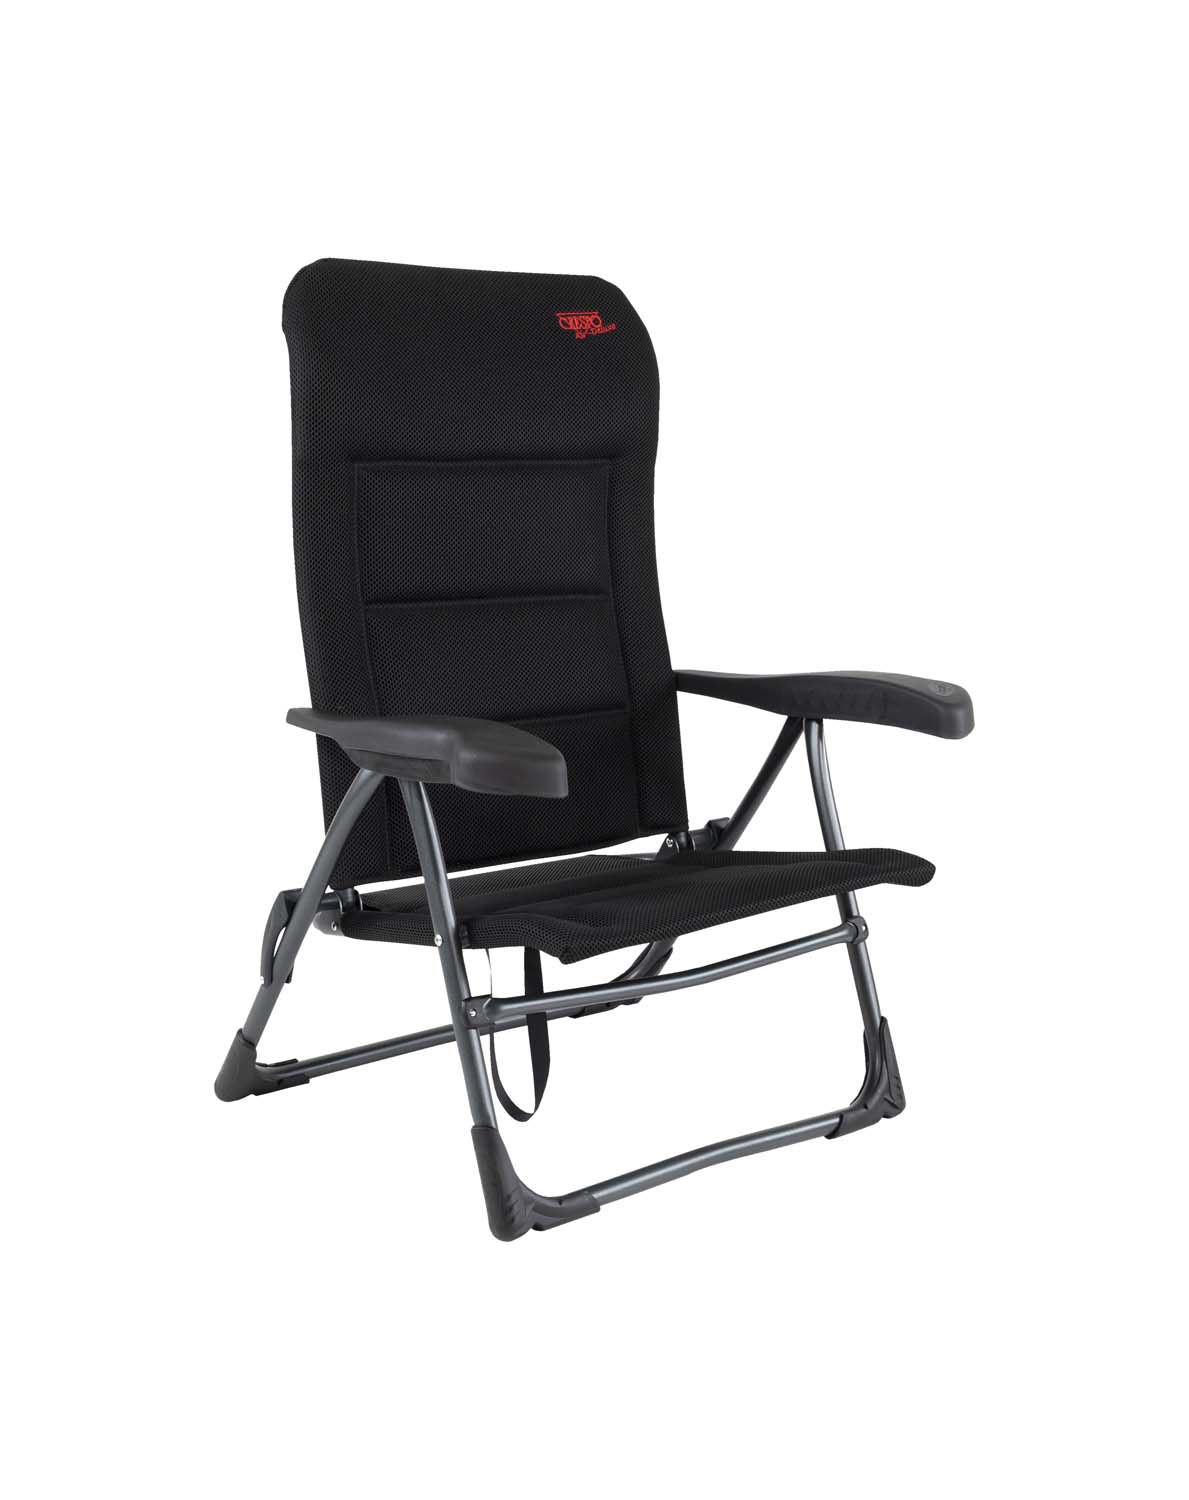 1149400 Een luxe en comfortabele strandstoel. Zeer comfortabel door de Dry Foam stoffering. De comfortabele vulling van deze stof heeft een open celstructuur waardoor geen vocht wordt vastgehouden. Ideaal voor gebruik op het strand, voor de tent of voor onderweg. Deze stoel is verstelbaar in 7 standen. Daarnaast is deze strandstoel voorzien van comfortabele armleuningen. Deze stoel is zeer compact en mede door de draaglussen gemakkelijk mee te nemen.